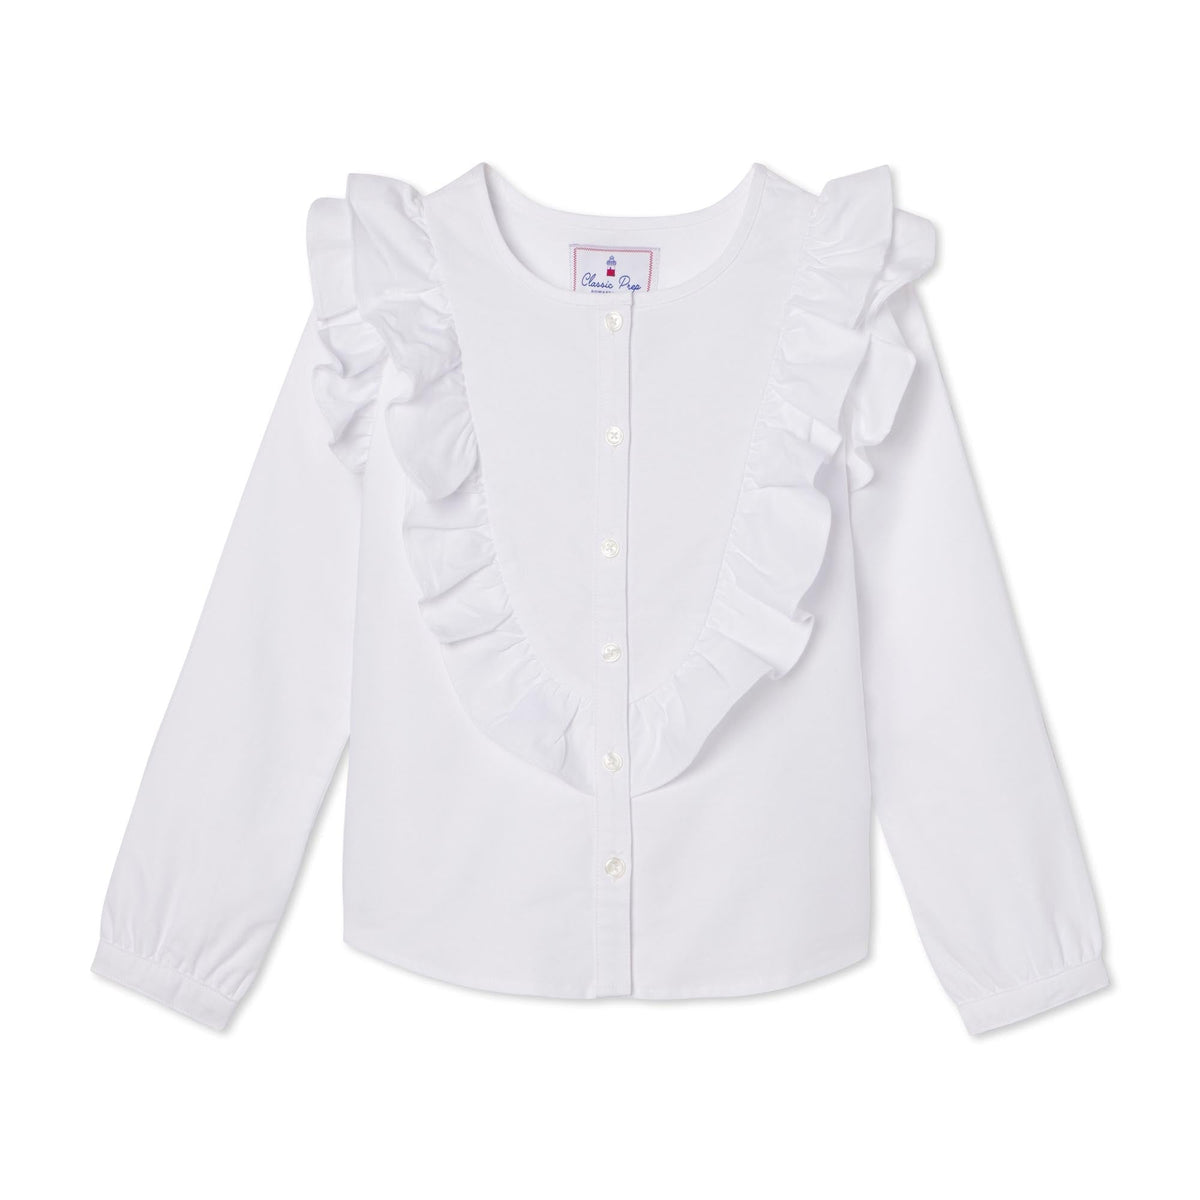 Classic and Preppy Gemma Top, Bright White Oxford-Shirts and Tops-Bright White-2T-CPC - Classic Prep Childrenswear